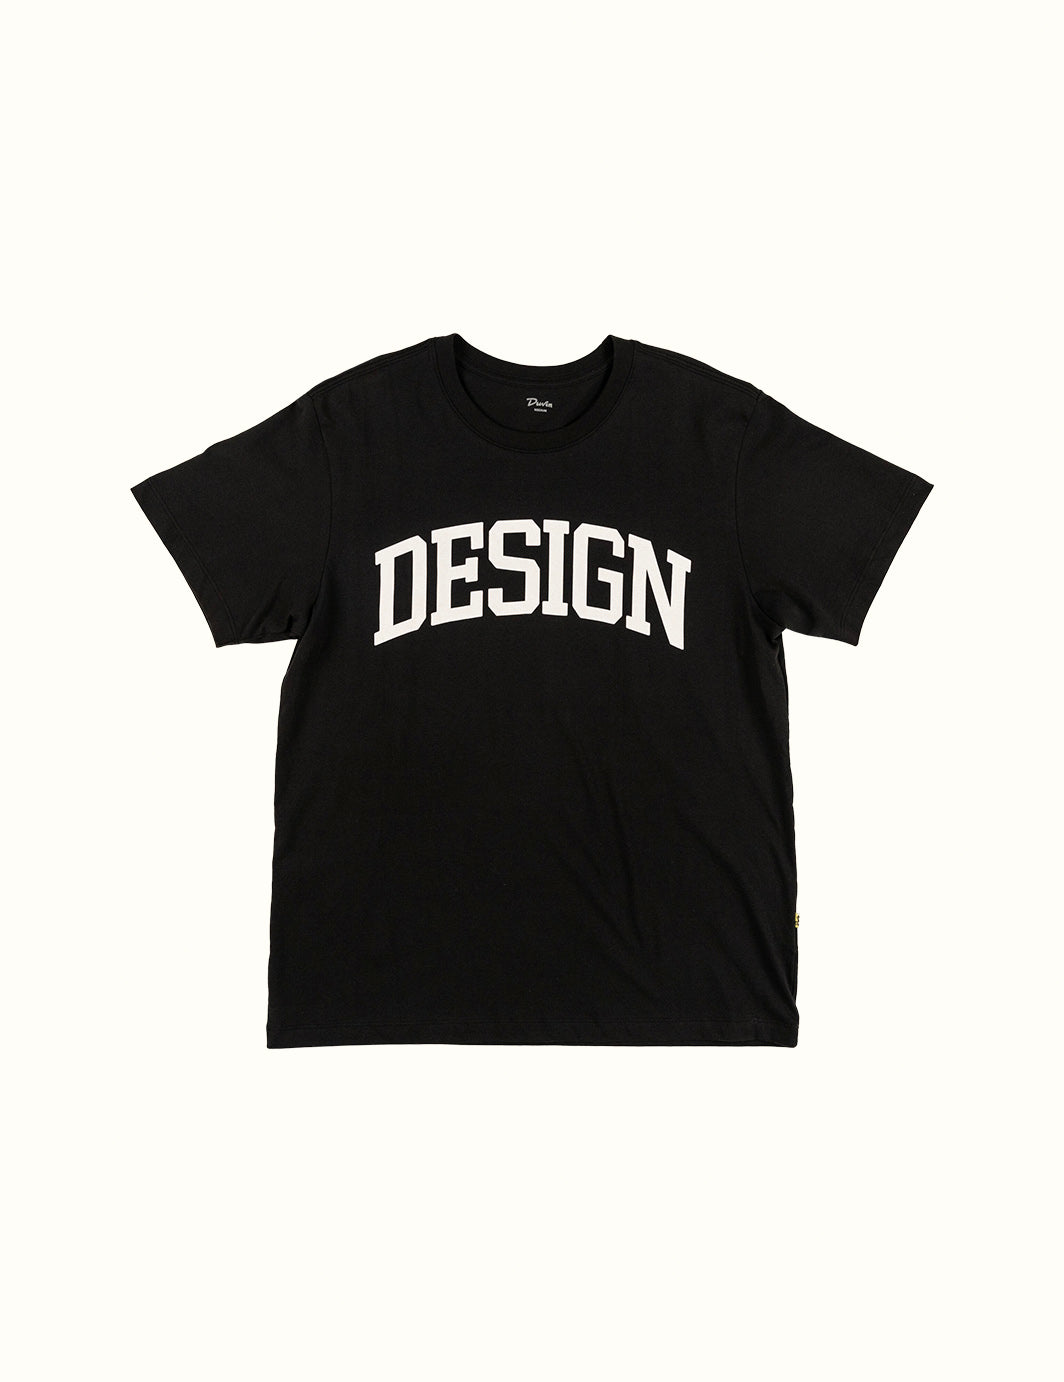 Design Tee - Black (HO 23)